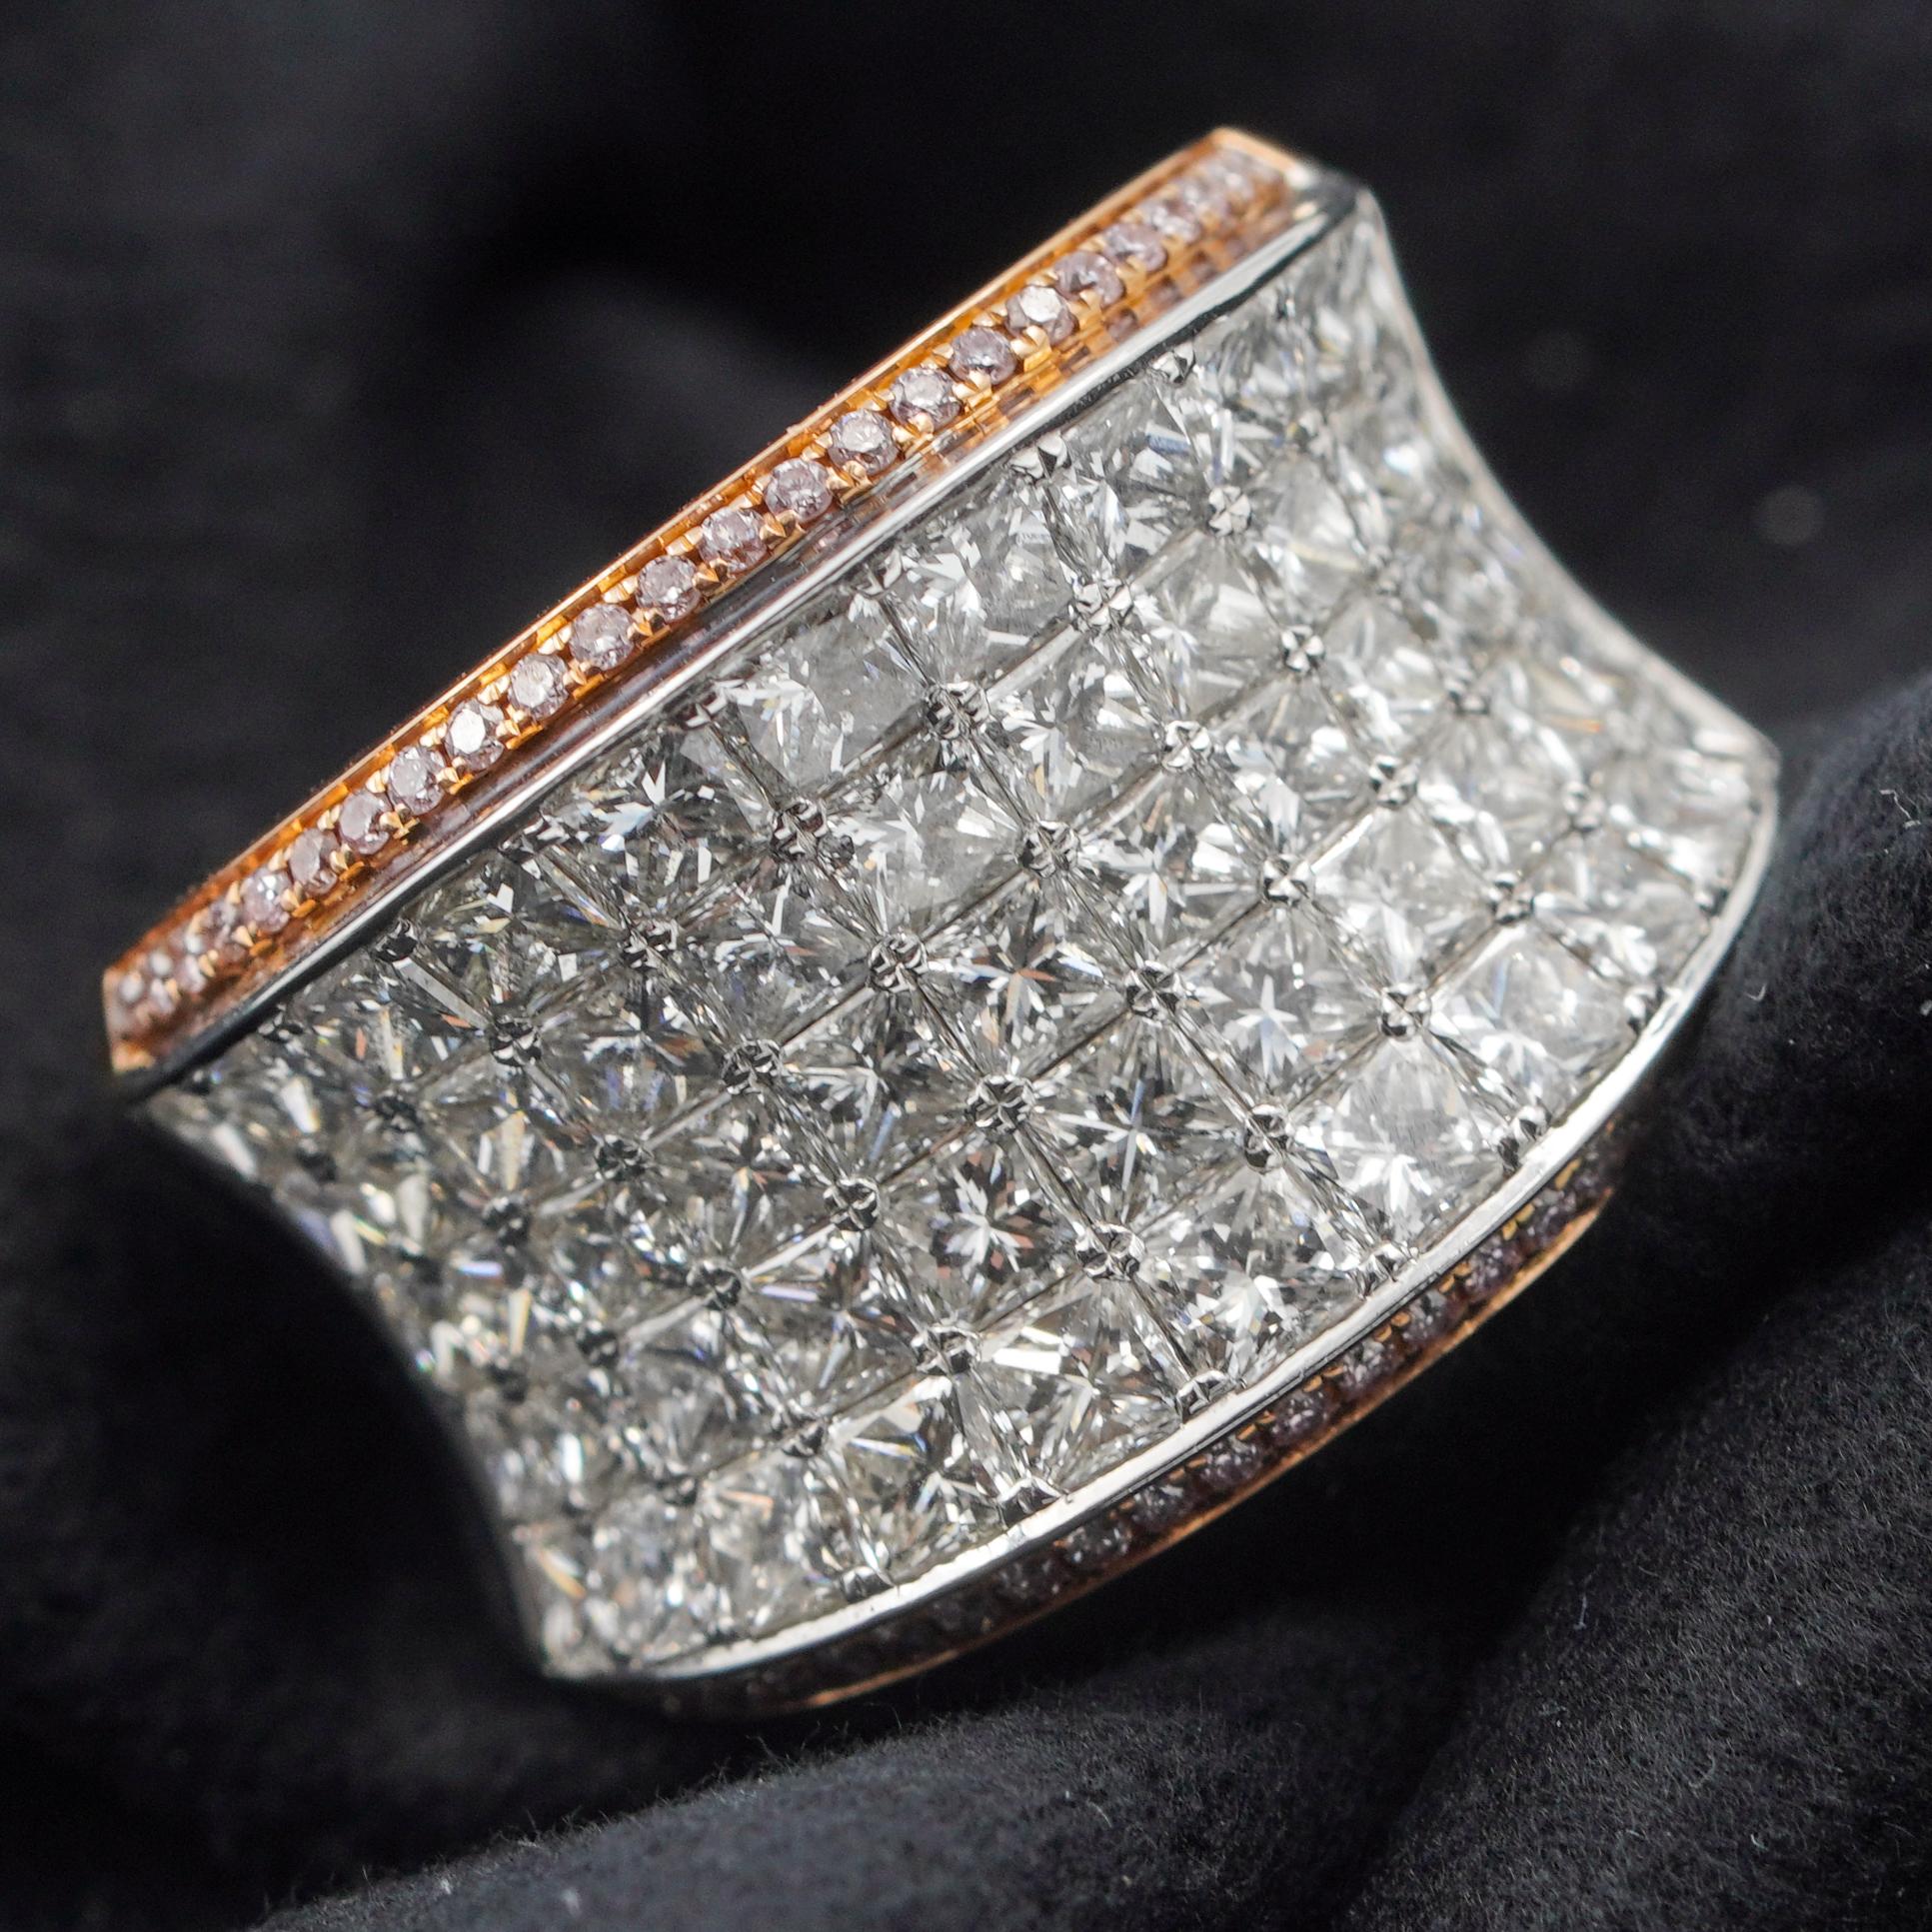 Dieser brillante zweifarbige Diamantring spielt mit dem Licht und ist ein echter Blickfang an Ihrem Finger. Das Stück ist mit Pave-Diamanten von insgesamt 4,17 Karat besetzt. Das zentrale Pflaster wird von kleinen rosafarbenen Diamanten eingerahmt,